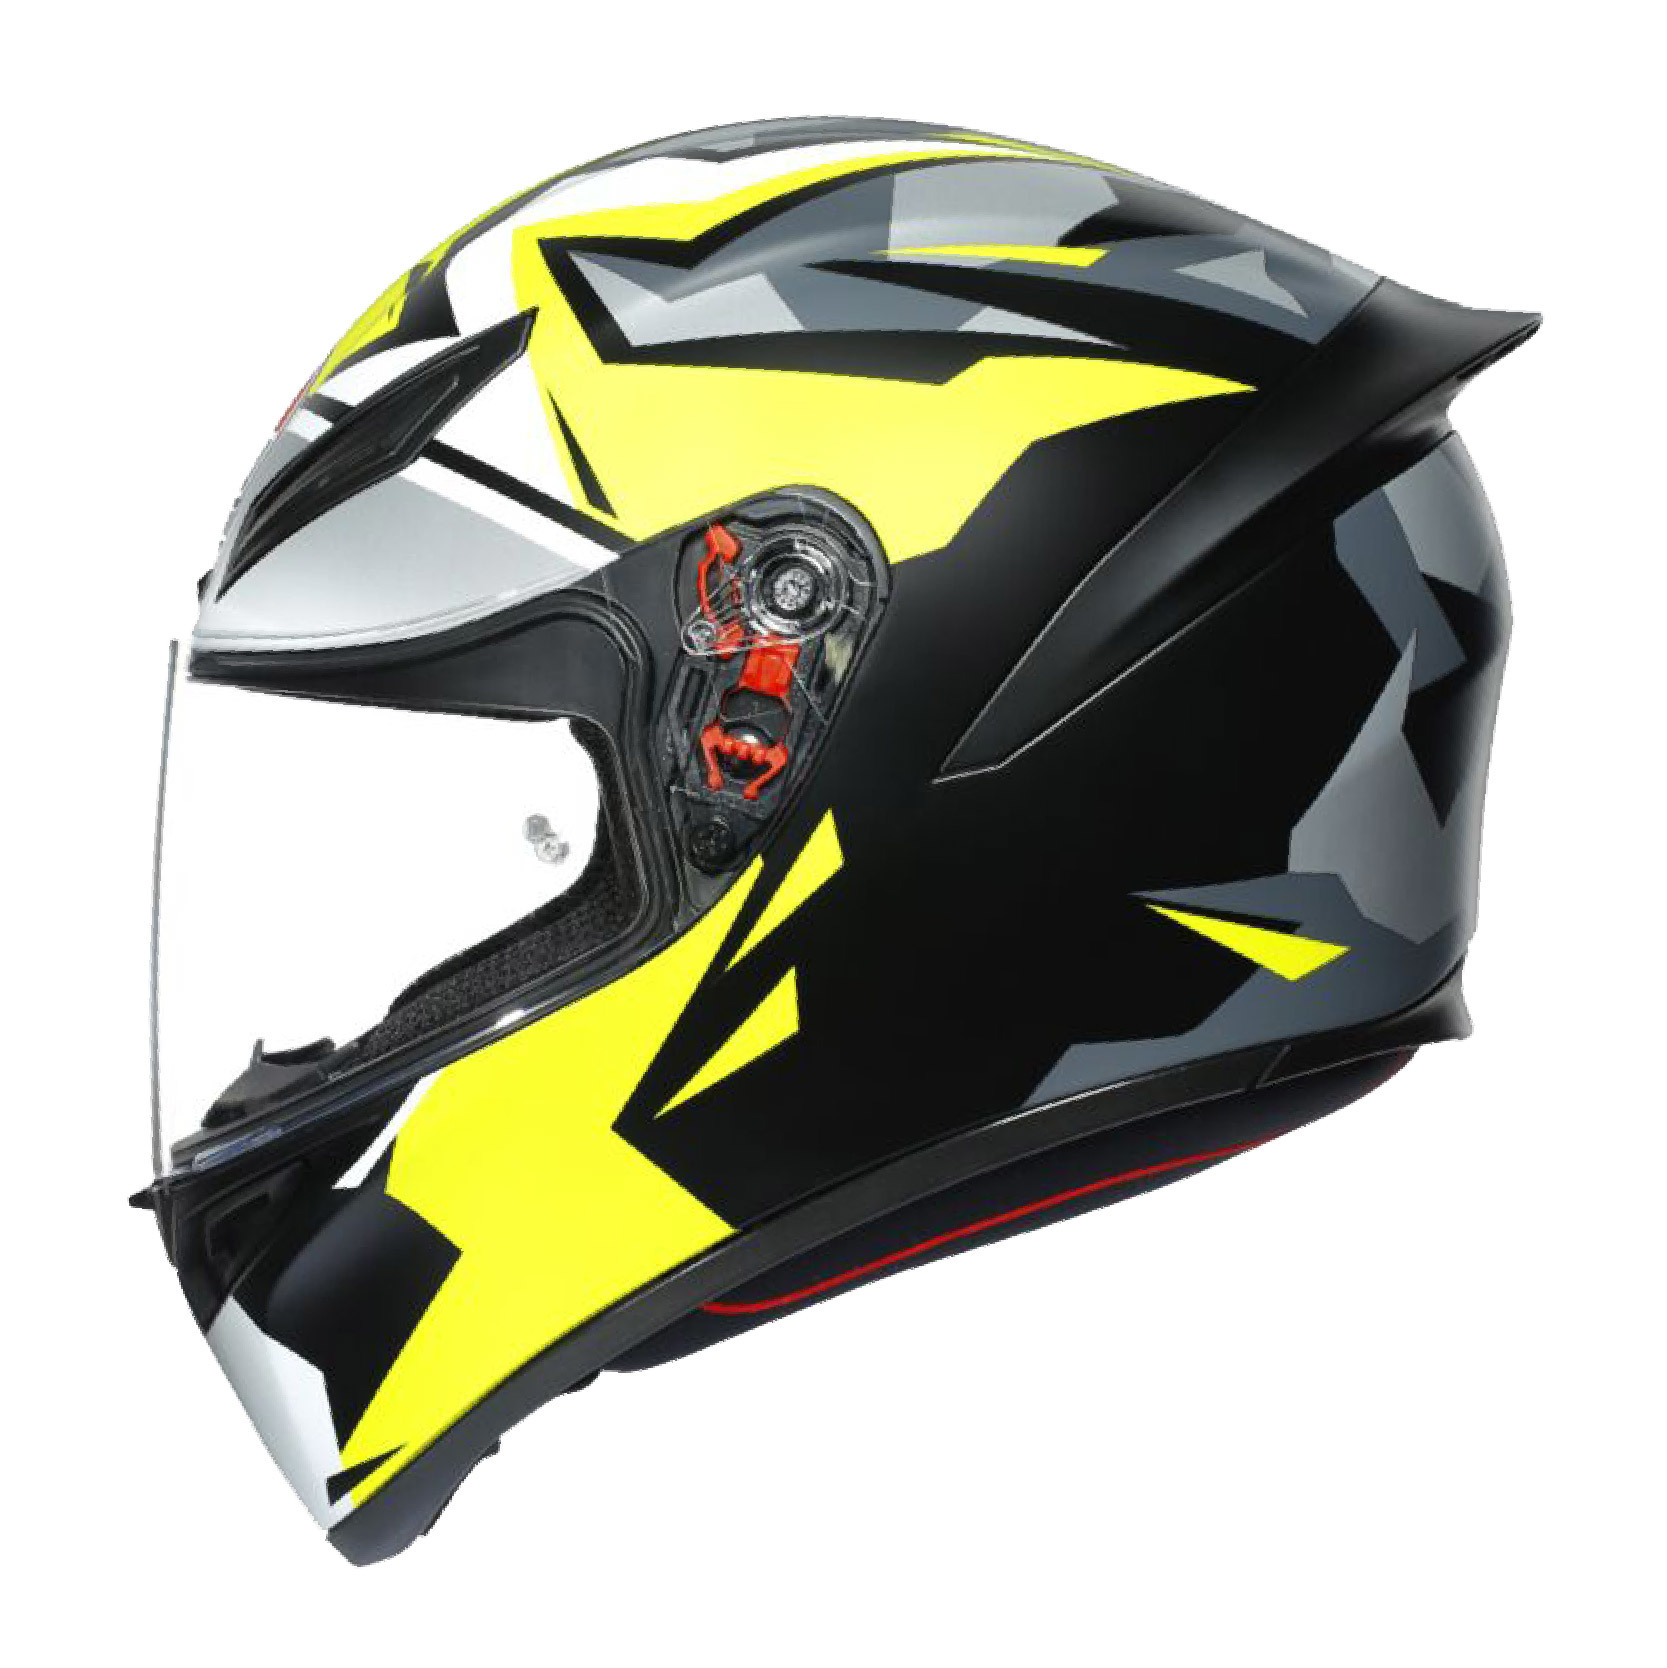 Casco integrale motoAgv K-1 K1 Mir 2018 helmet casque helm 